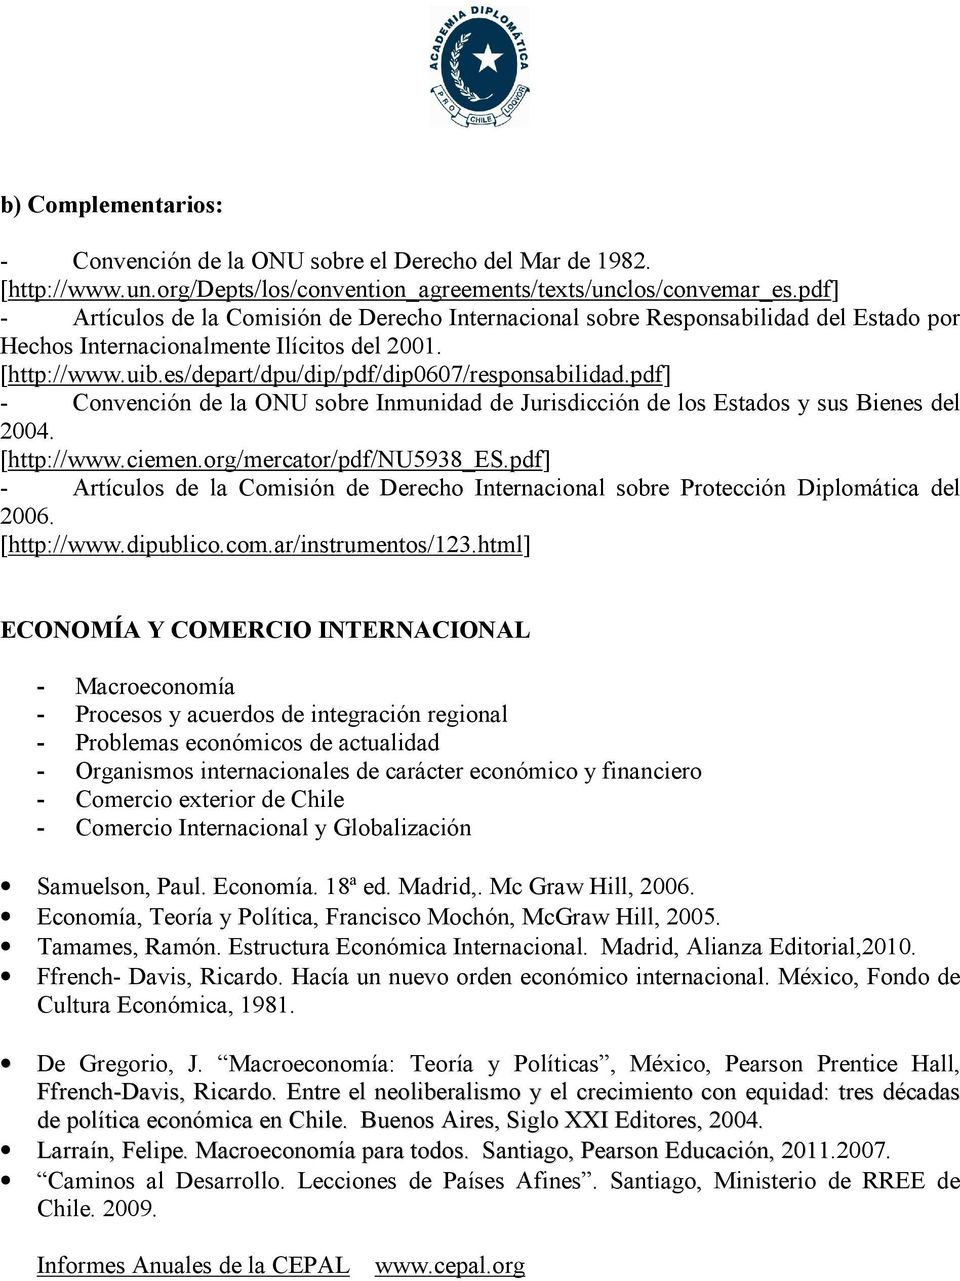 es/depart/dpu/dip/pdf/dip0607/responsabilidad.pdf] - Convención de la ONU sobre Inmunidad de Jurisdicción de los Estados y sus Bienes del 2004. [http://www.ciemen.org/mercator/pdf/nu5938_es.